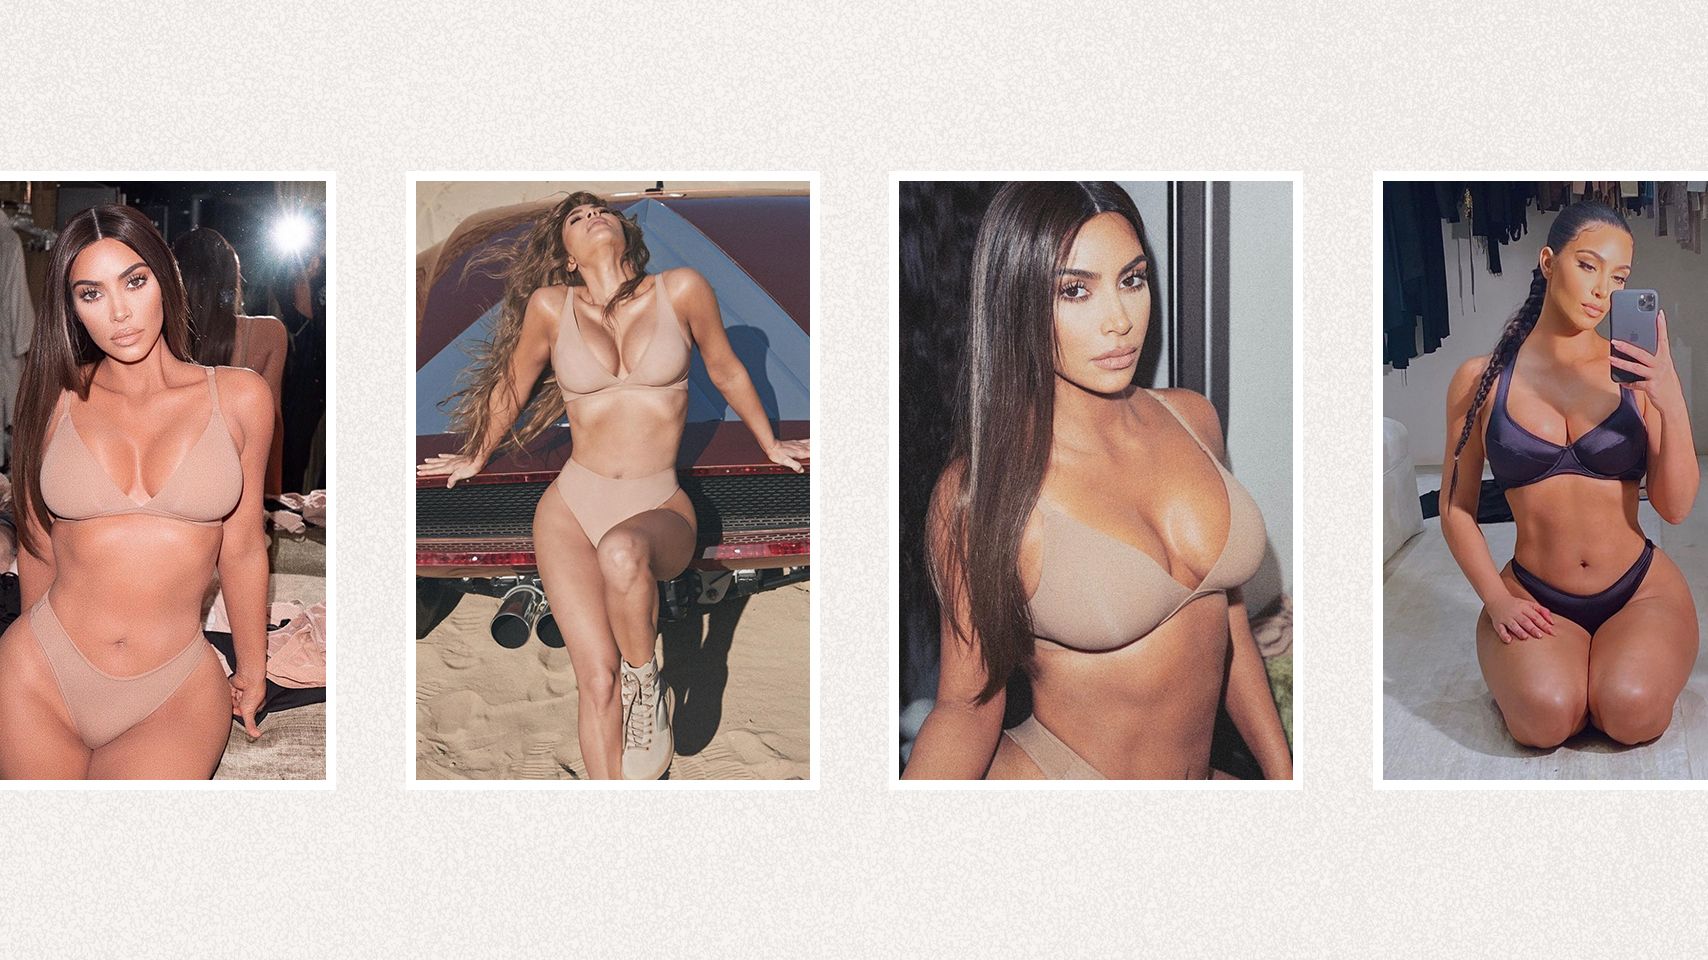 1708px x 960px - Kim Kardashian's Best Nudes - All of Kim K's Best Boob Instagram Pics